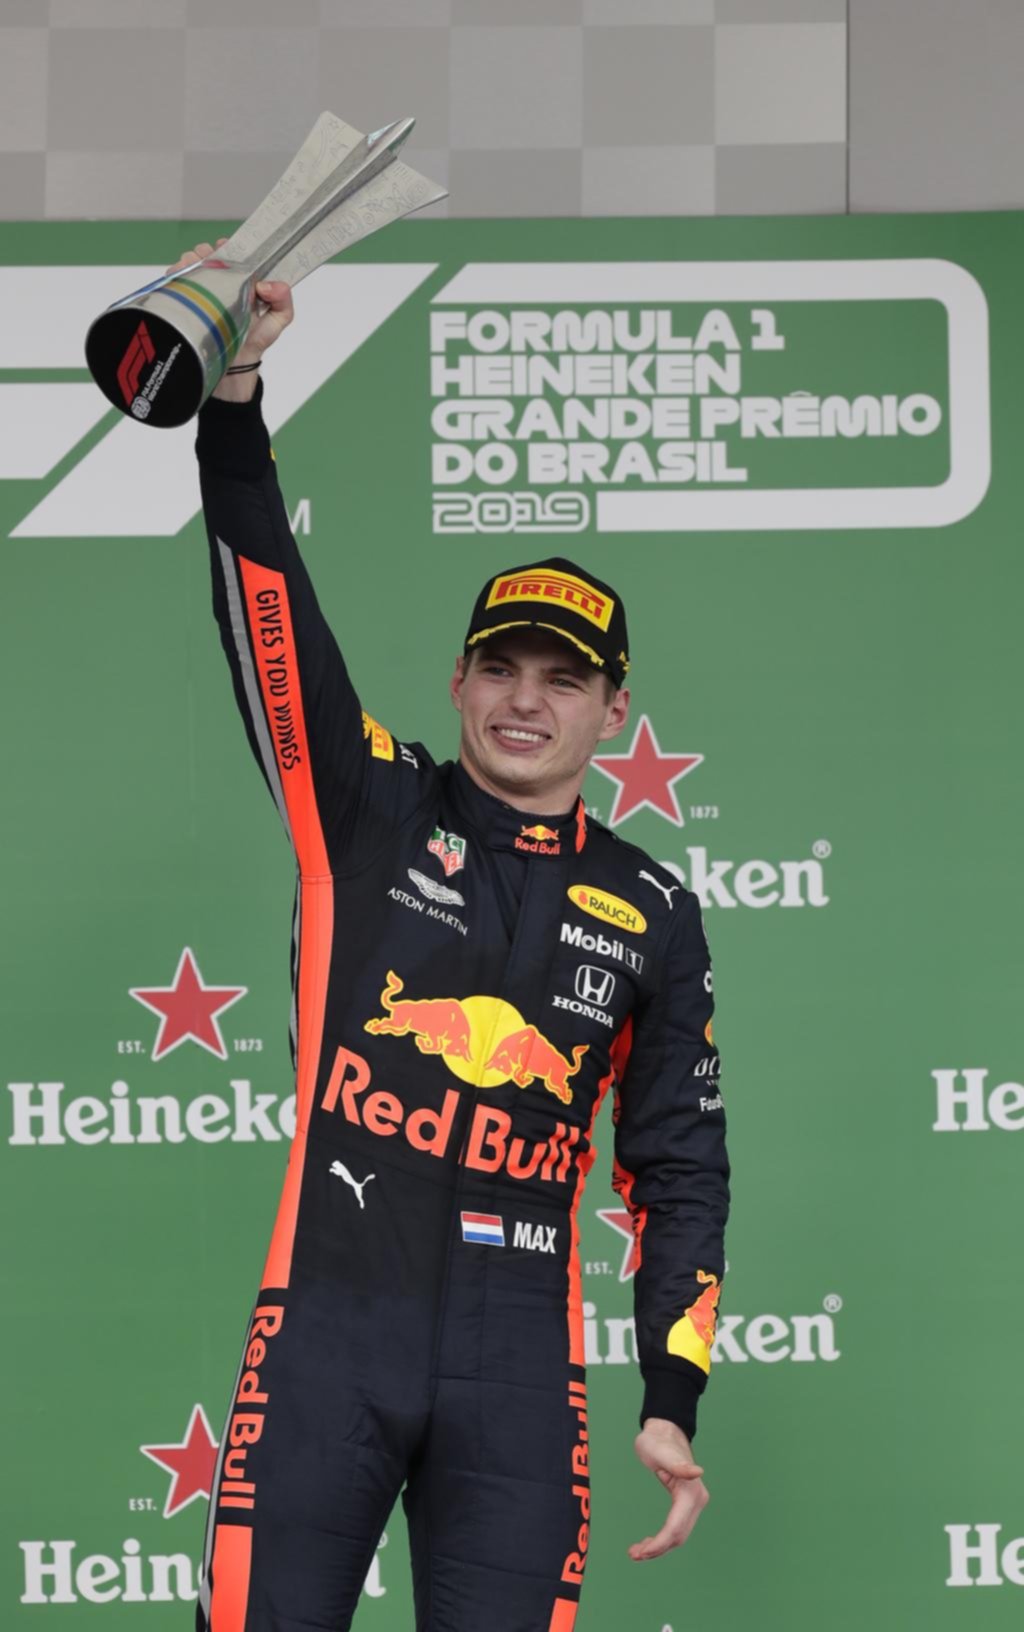 El holandés Verstappen ganó el GP de Brasil y las dos Ferrari dieron la nota con un papelón